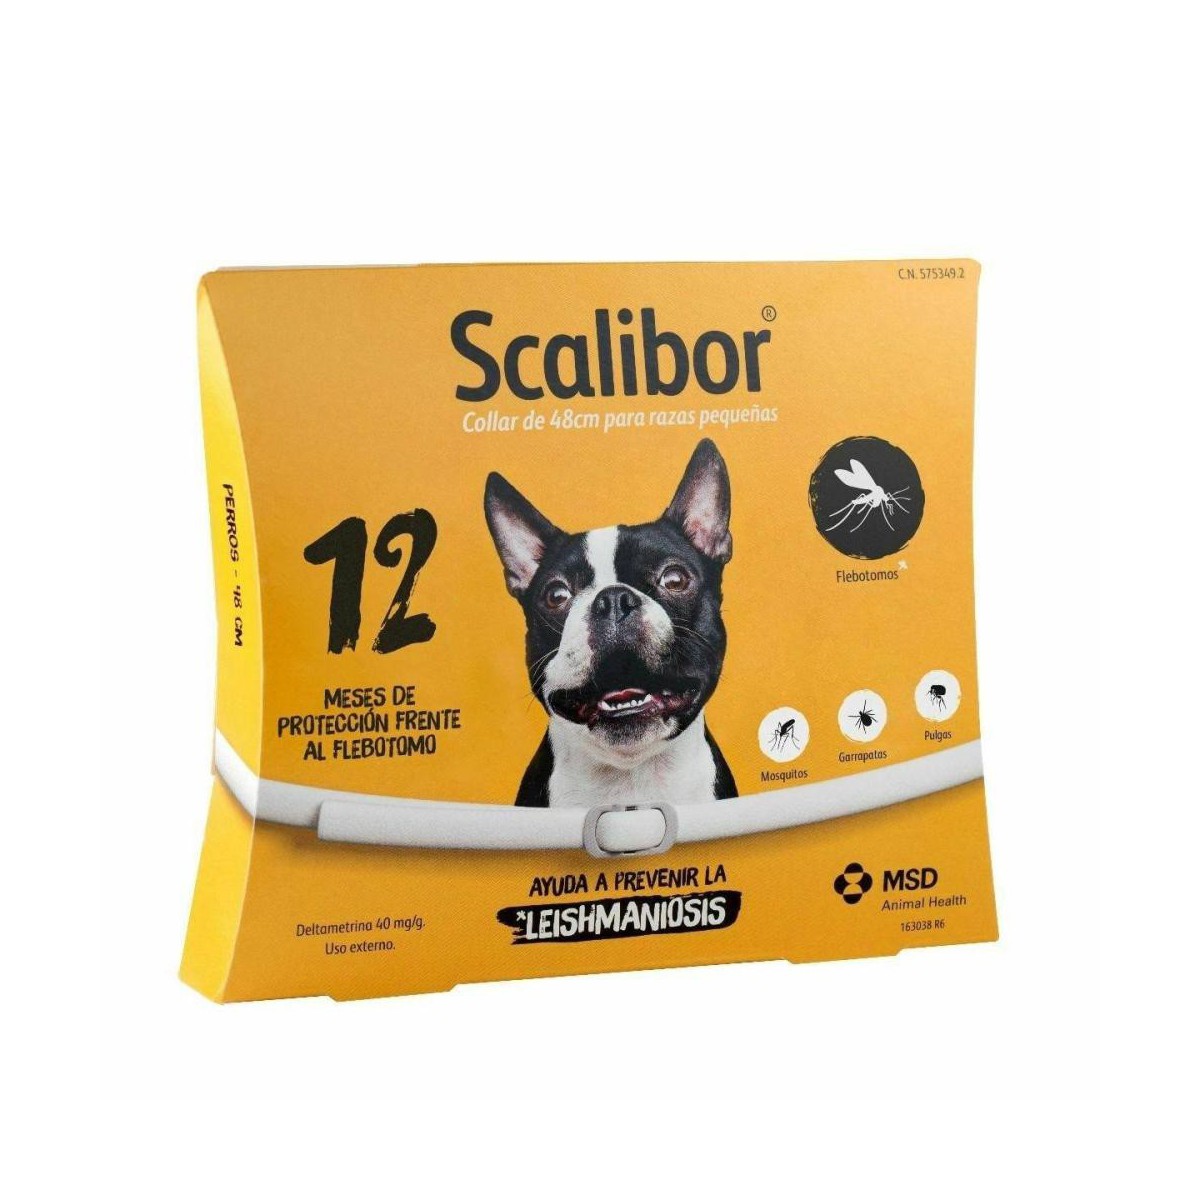 Scalibor Collar 48 cm 12 meses protección perros pequeños